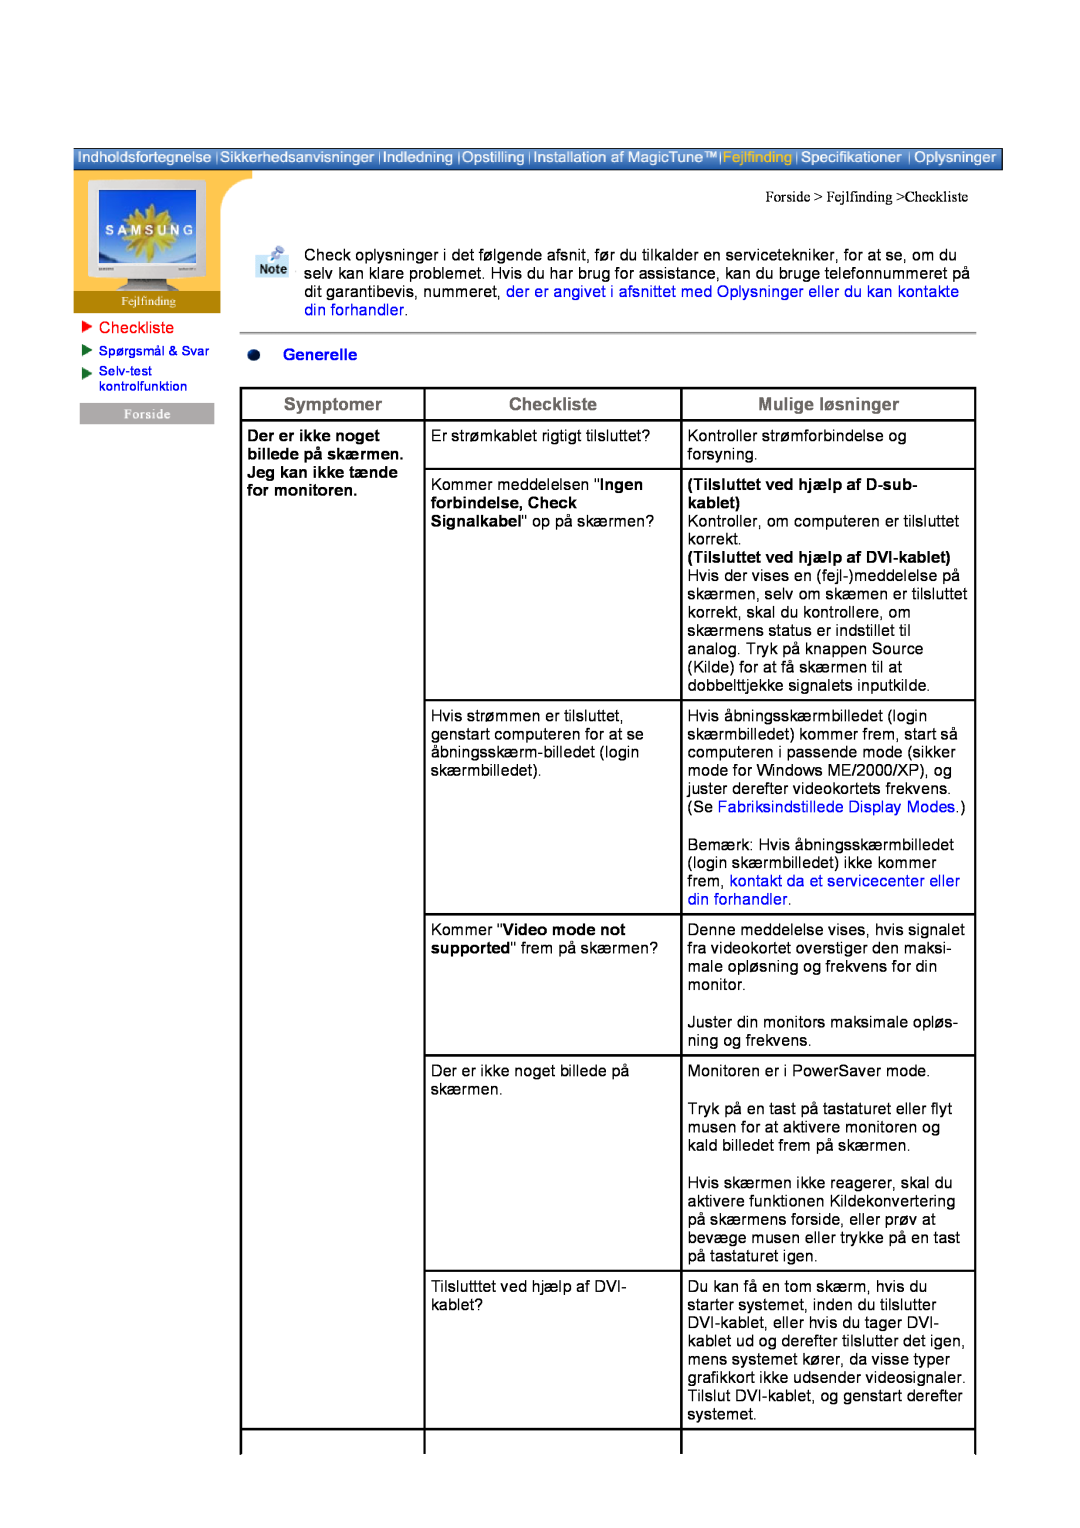 Samsung DI19PSQRV/EDC manual Symptomer, Checkliste, Mulige løsninger, Generelle, Tilsluttet ved hjælp af D-sub- kablet 